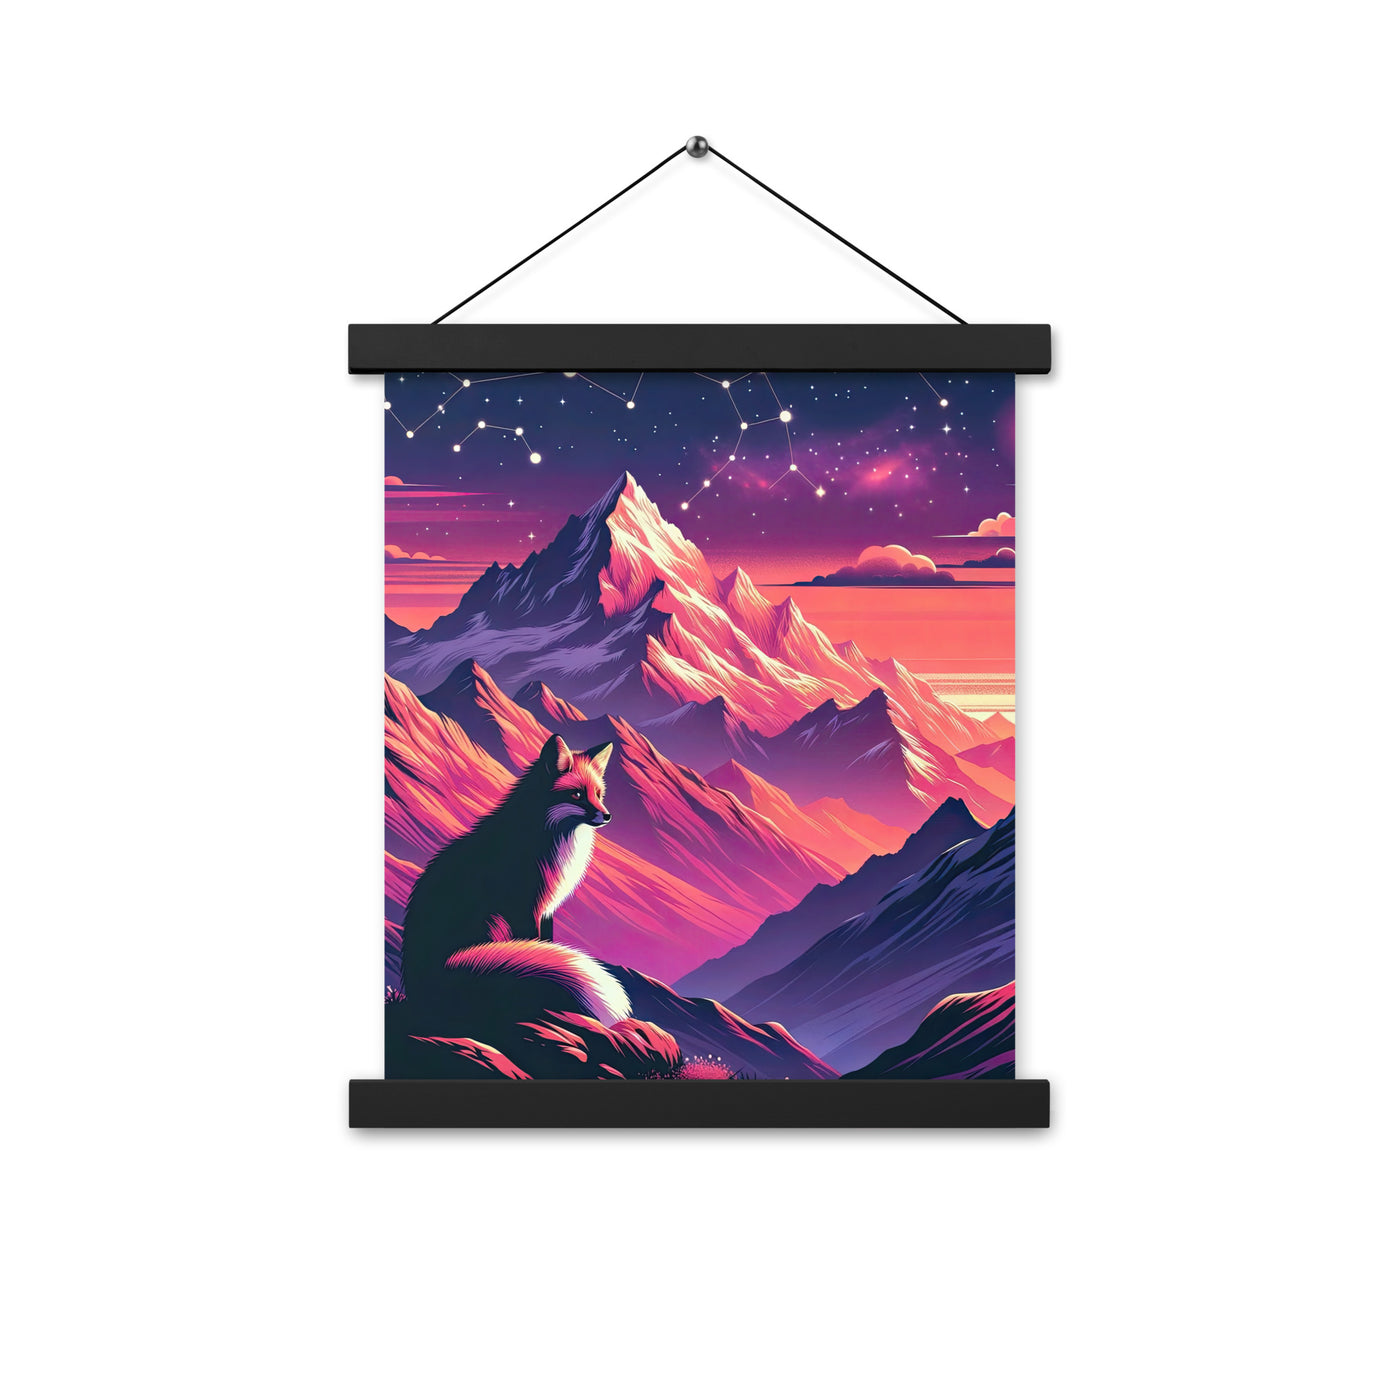 Fuchs im dramatischen Sonnenuntergang: Digitale Bergillustration in Abendfarben - Premium Poster mit Aufhängung camping xxx yyy zzz 27.9 x 35.6 cm